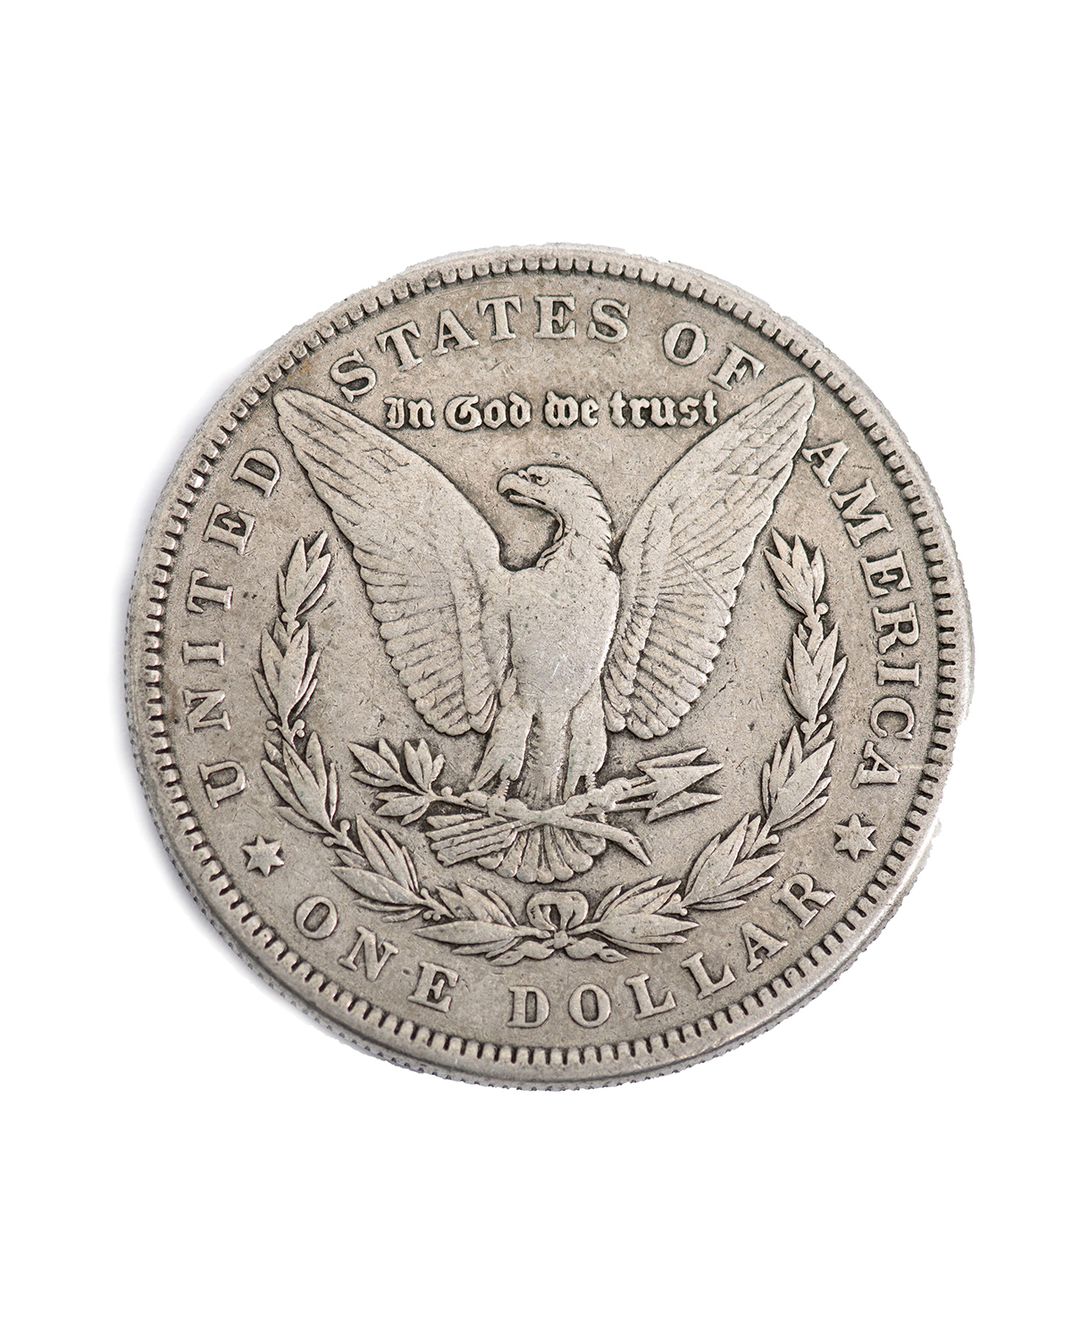 a bald eagle on a 1885 U.S. silver dollar